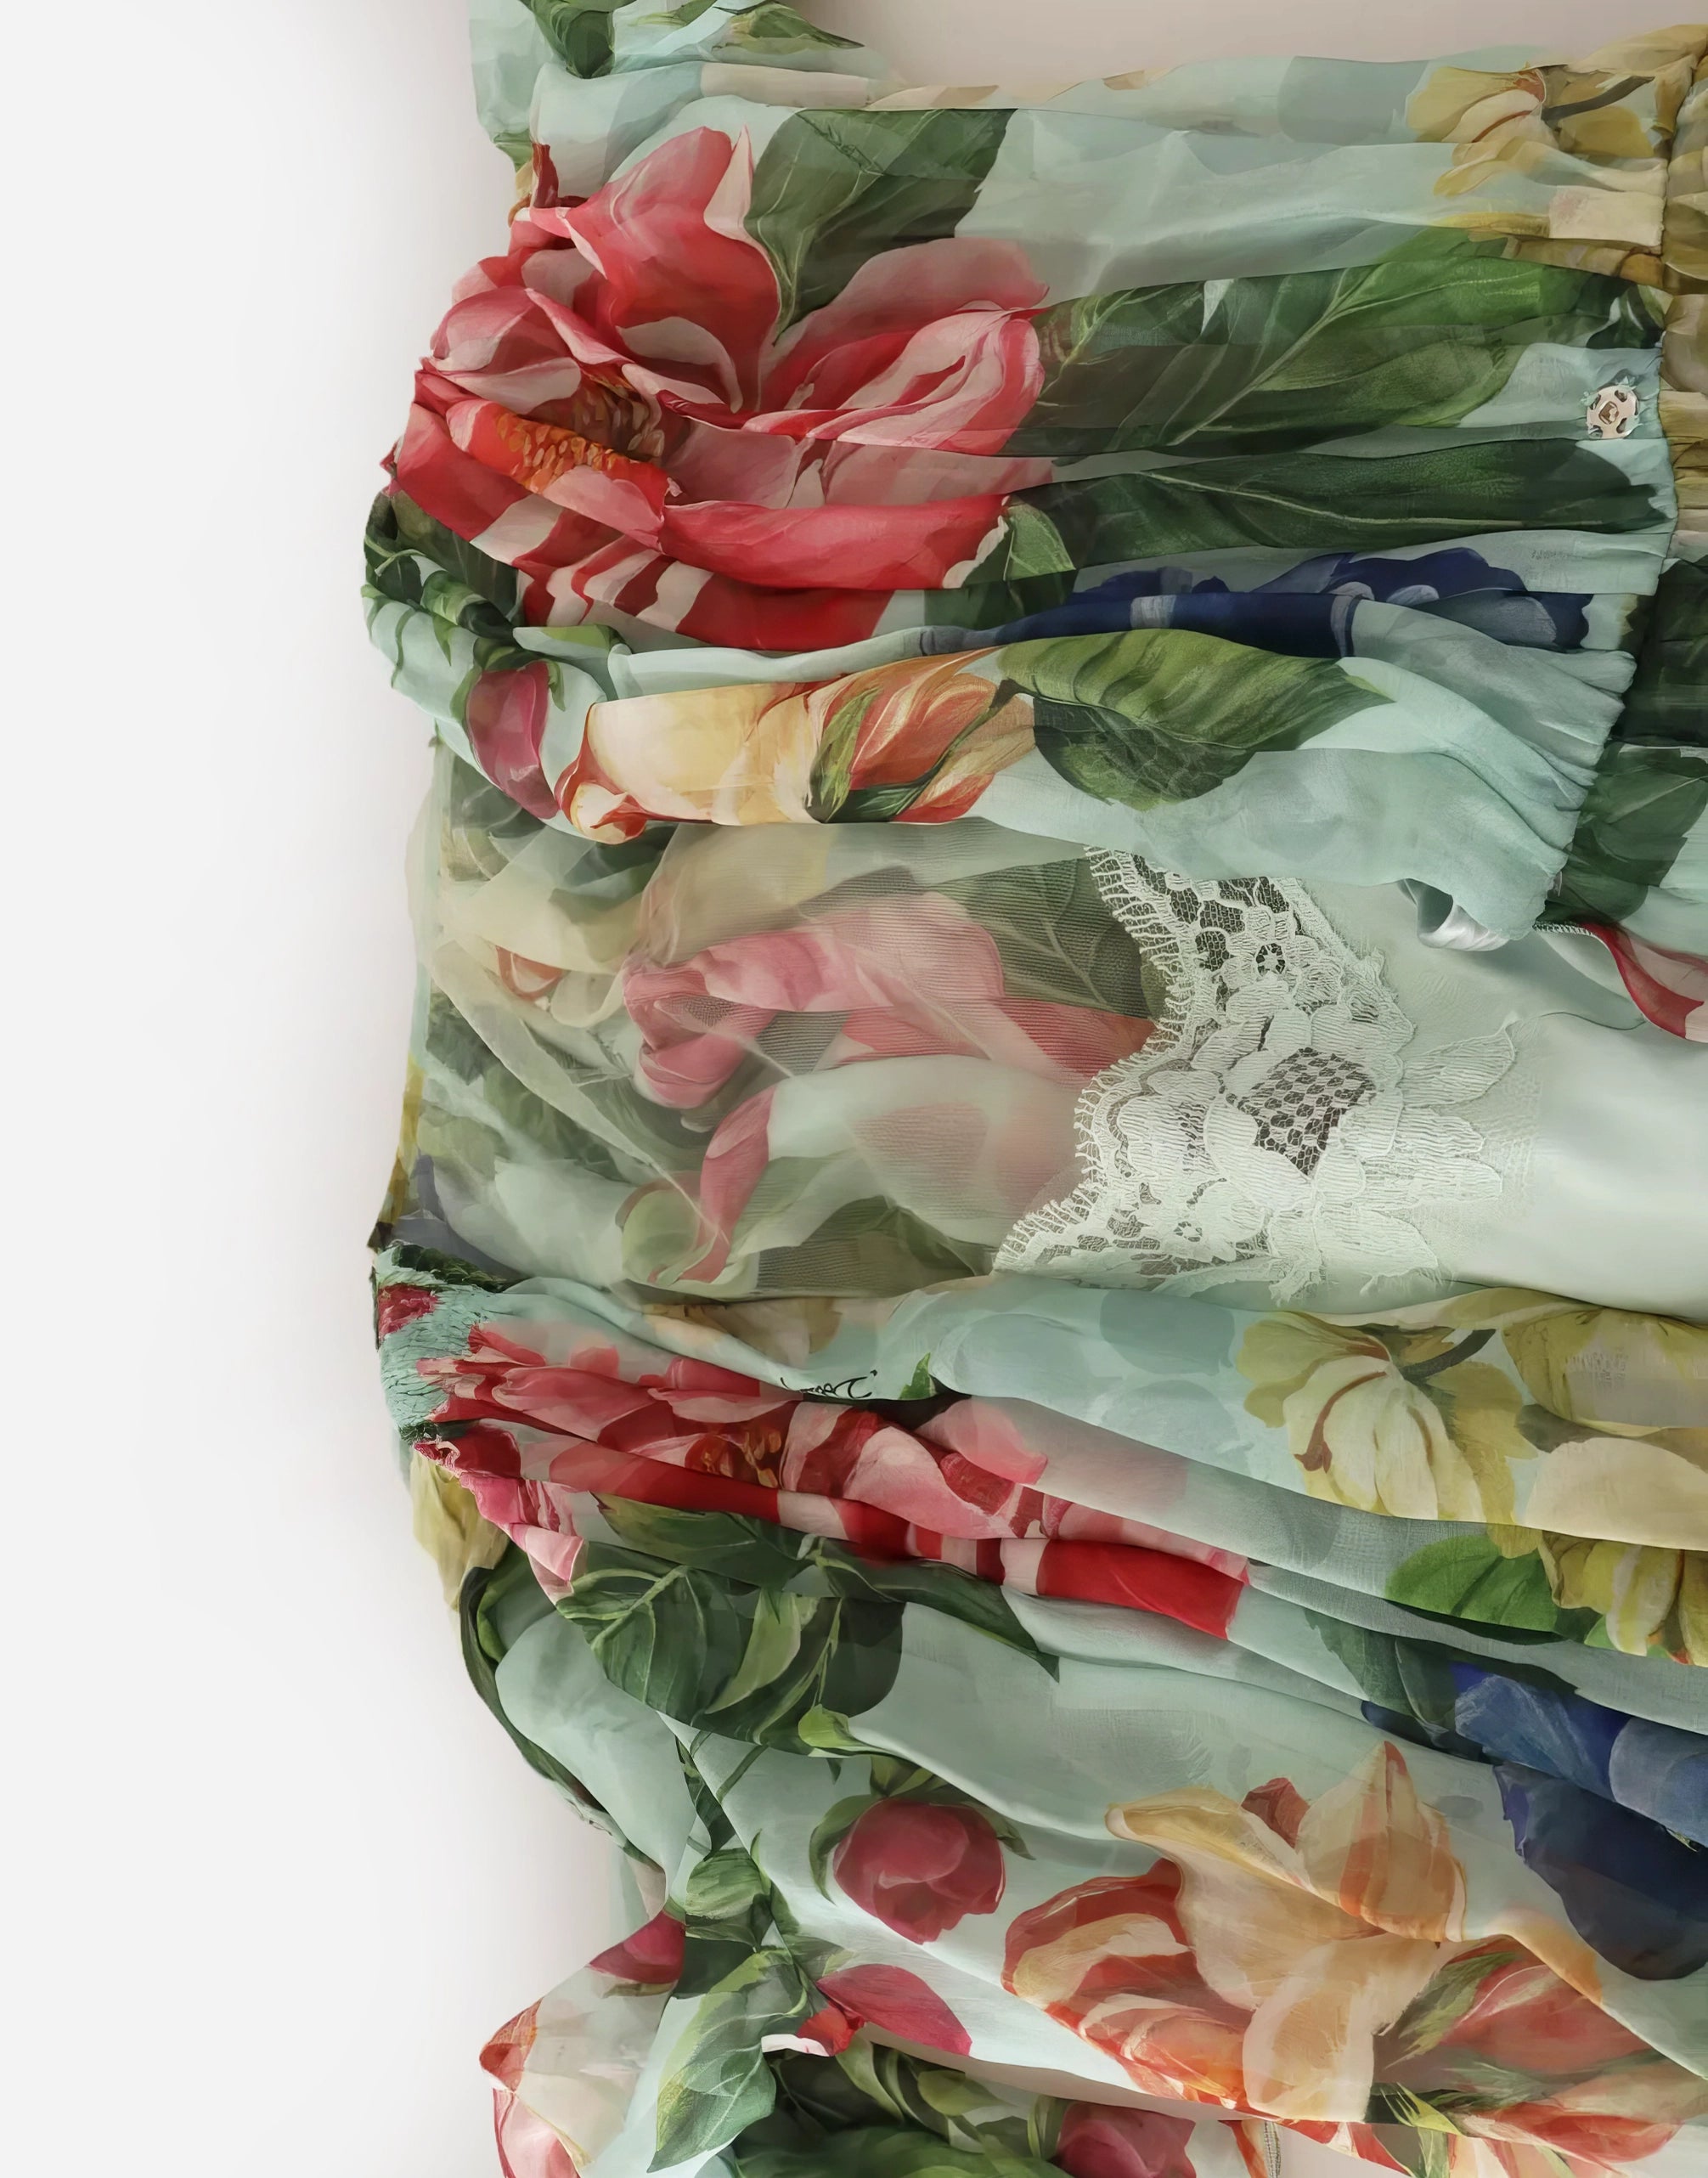 Flared Floral Print Midi Dress